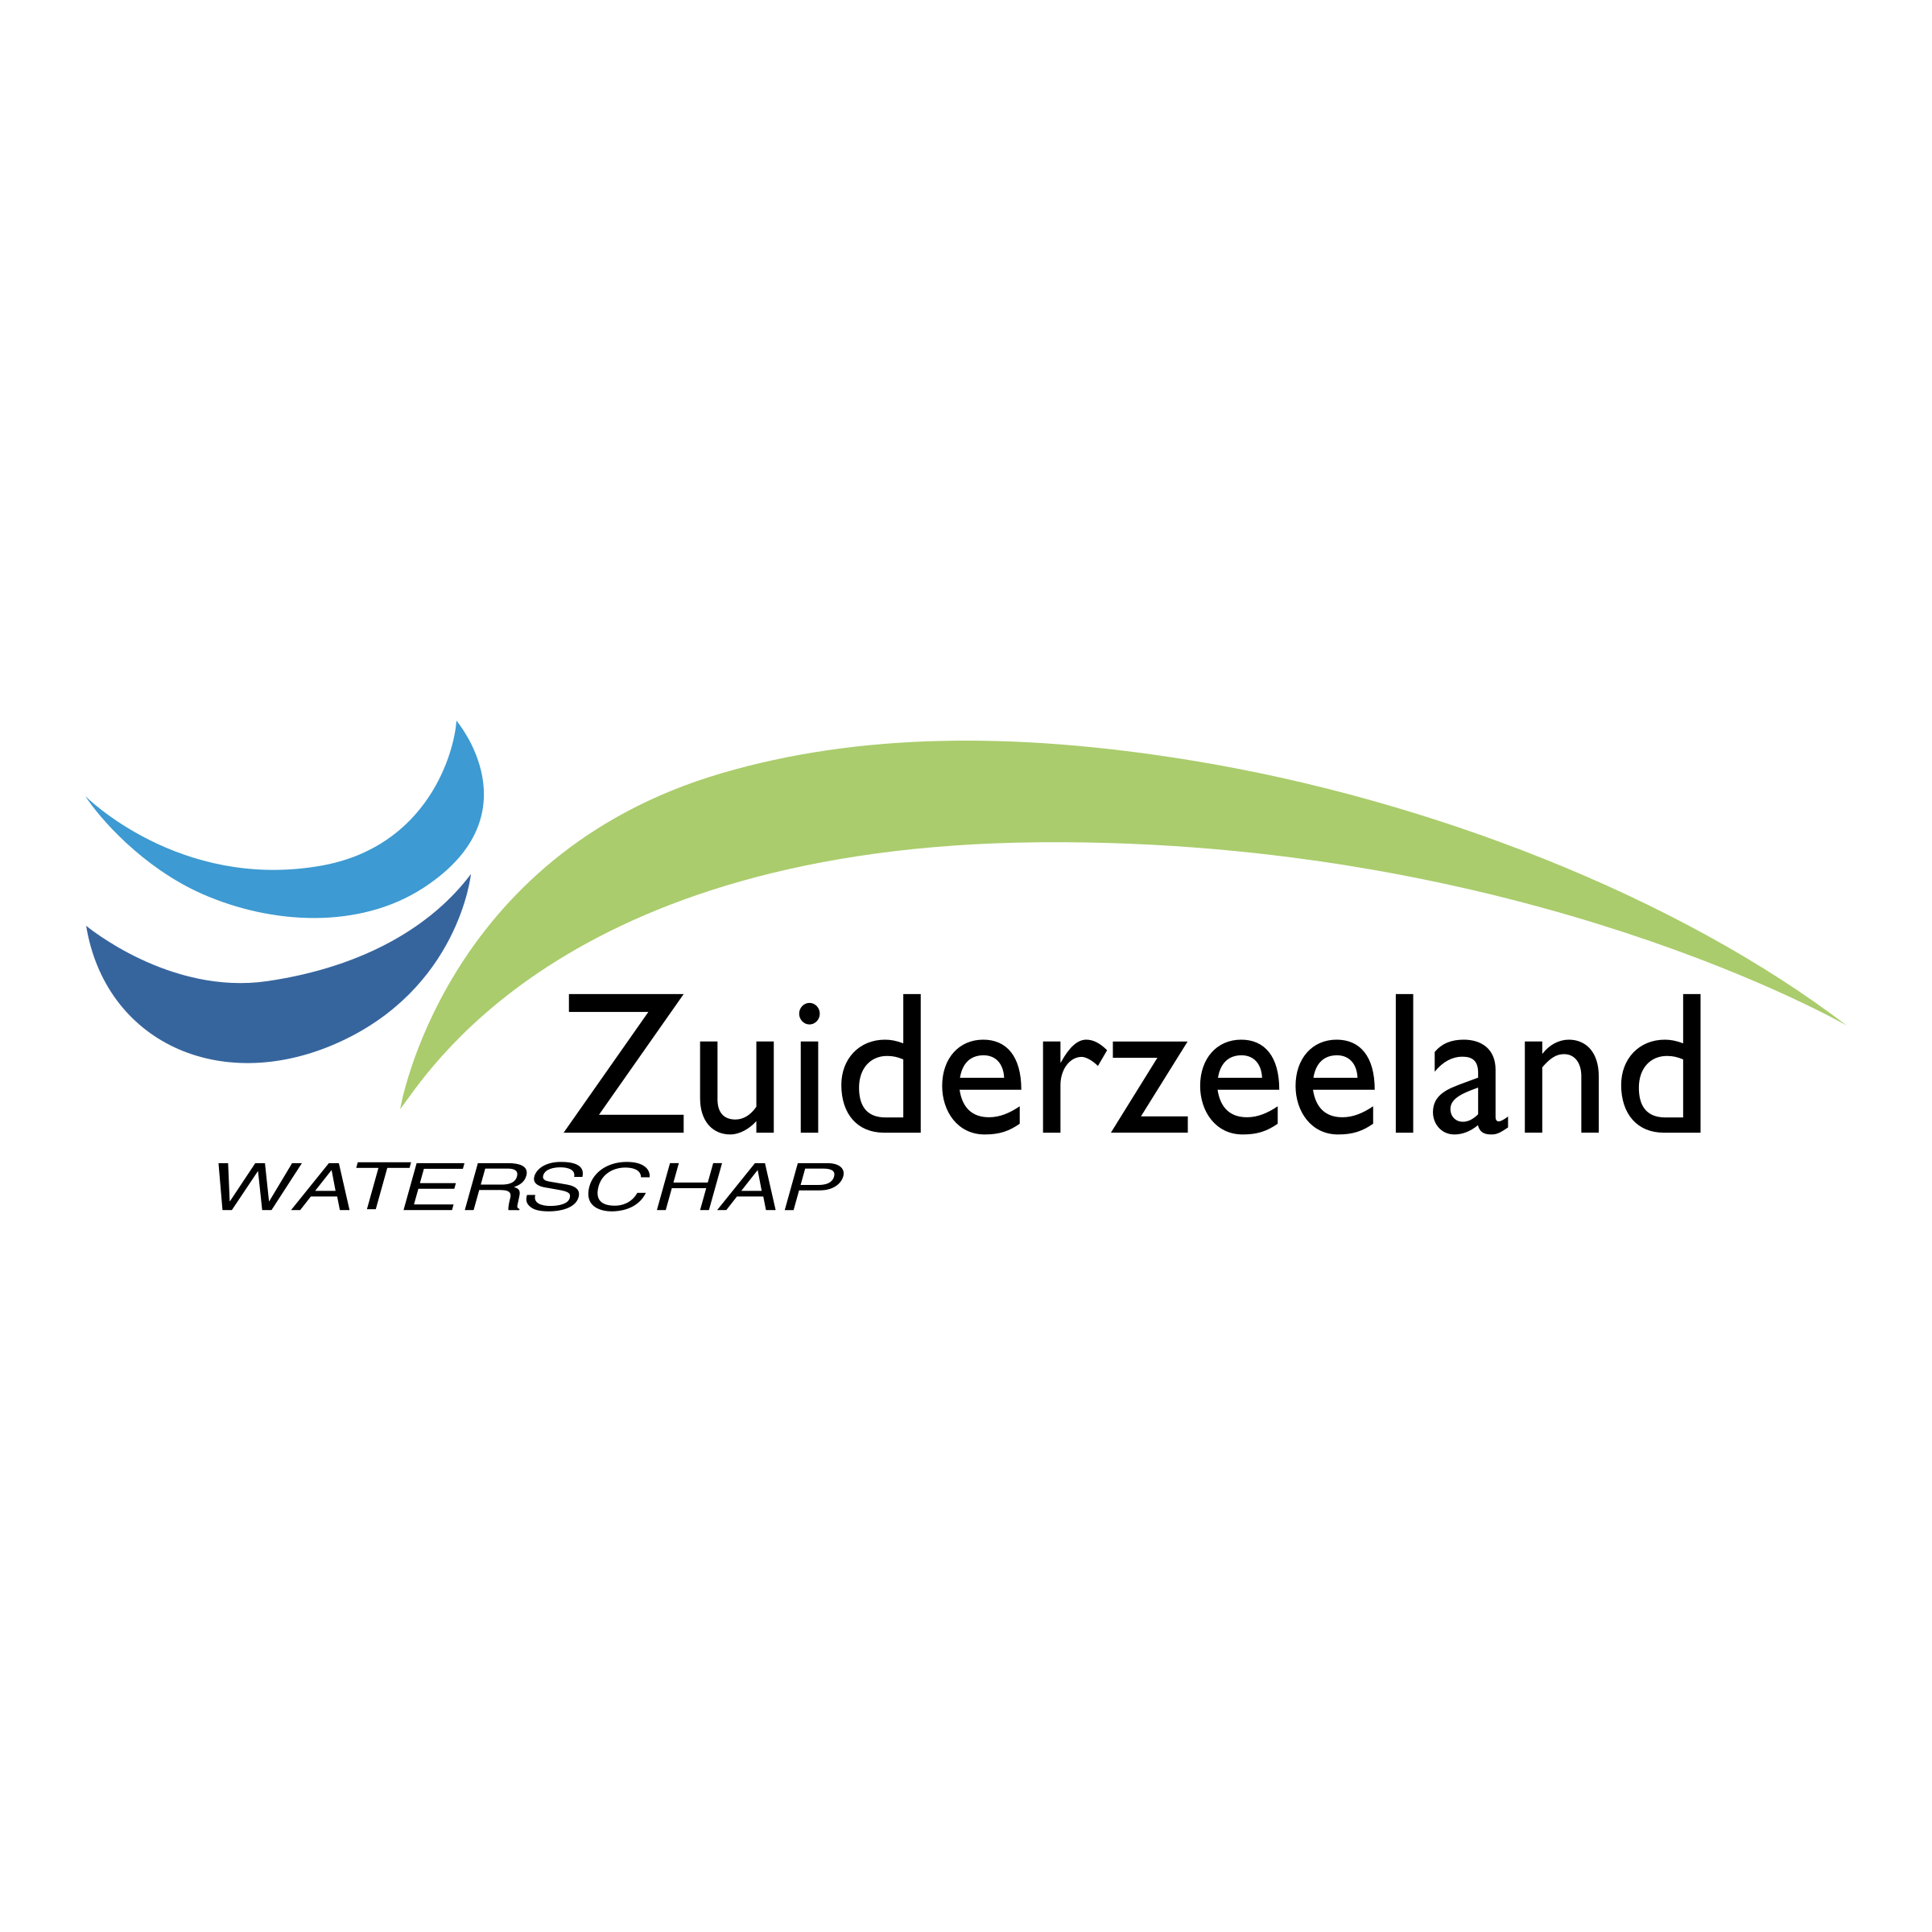 waterschap-zuiderzeeland-logo-png-transparent